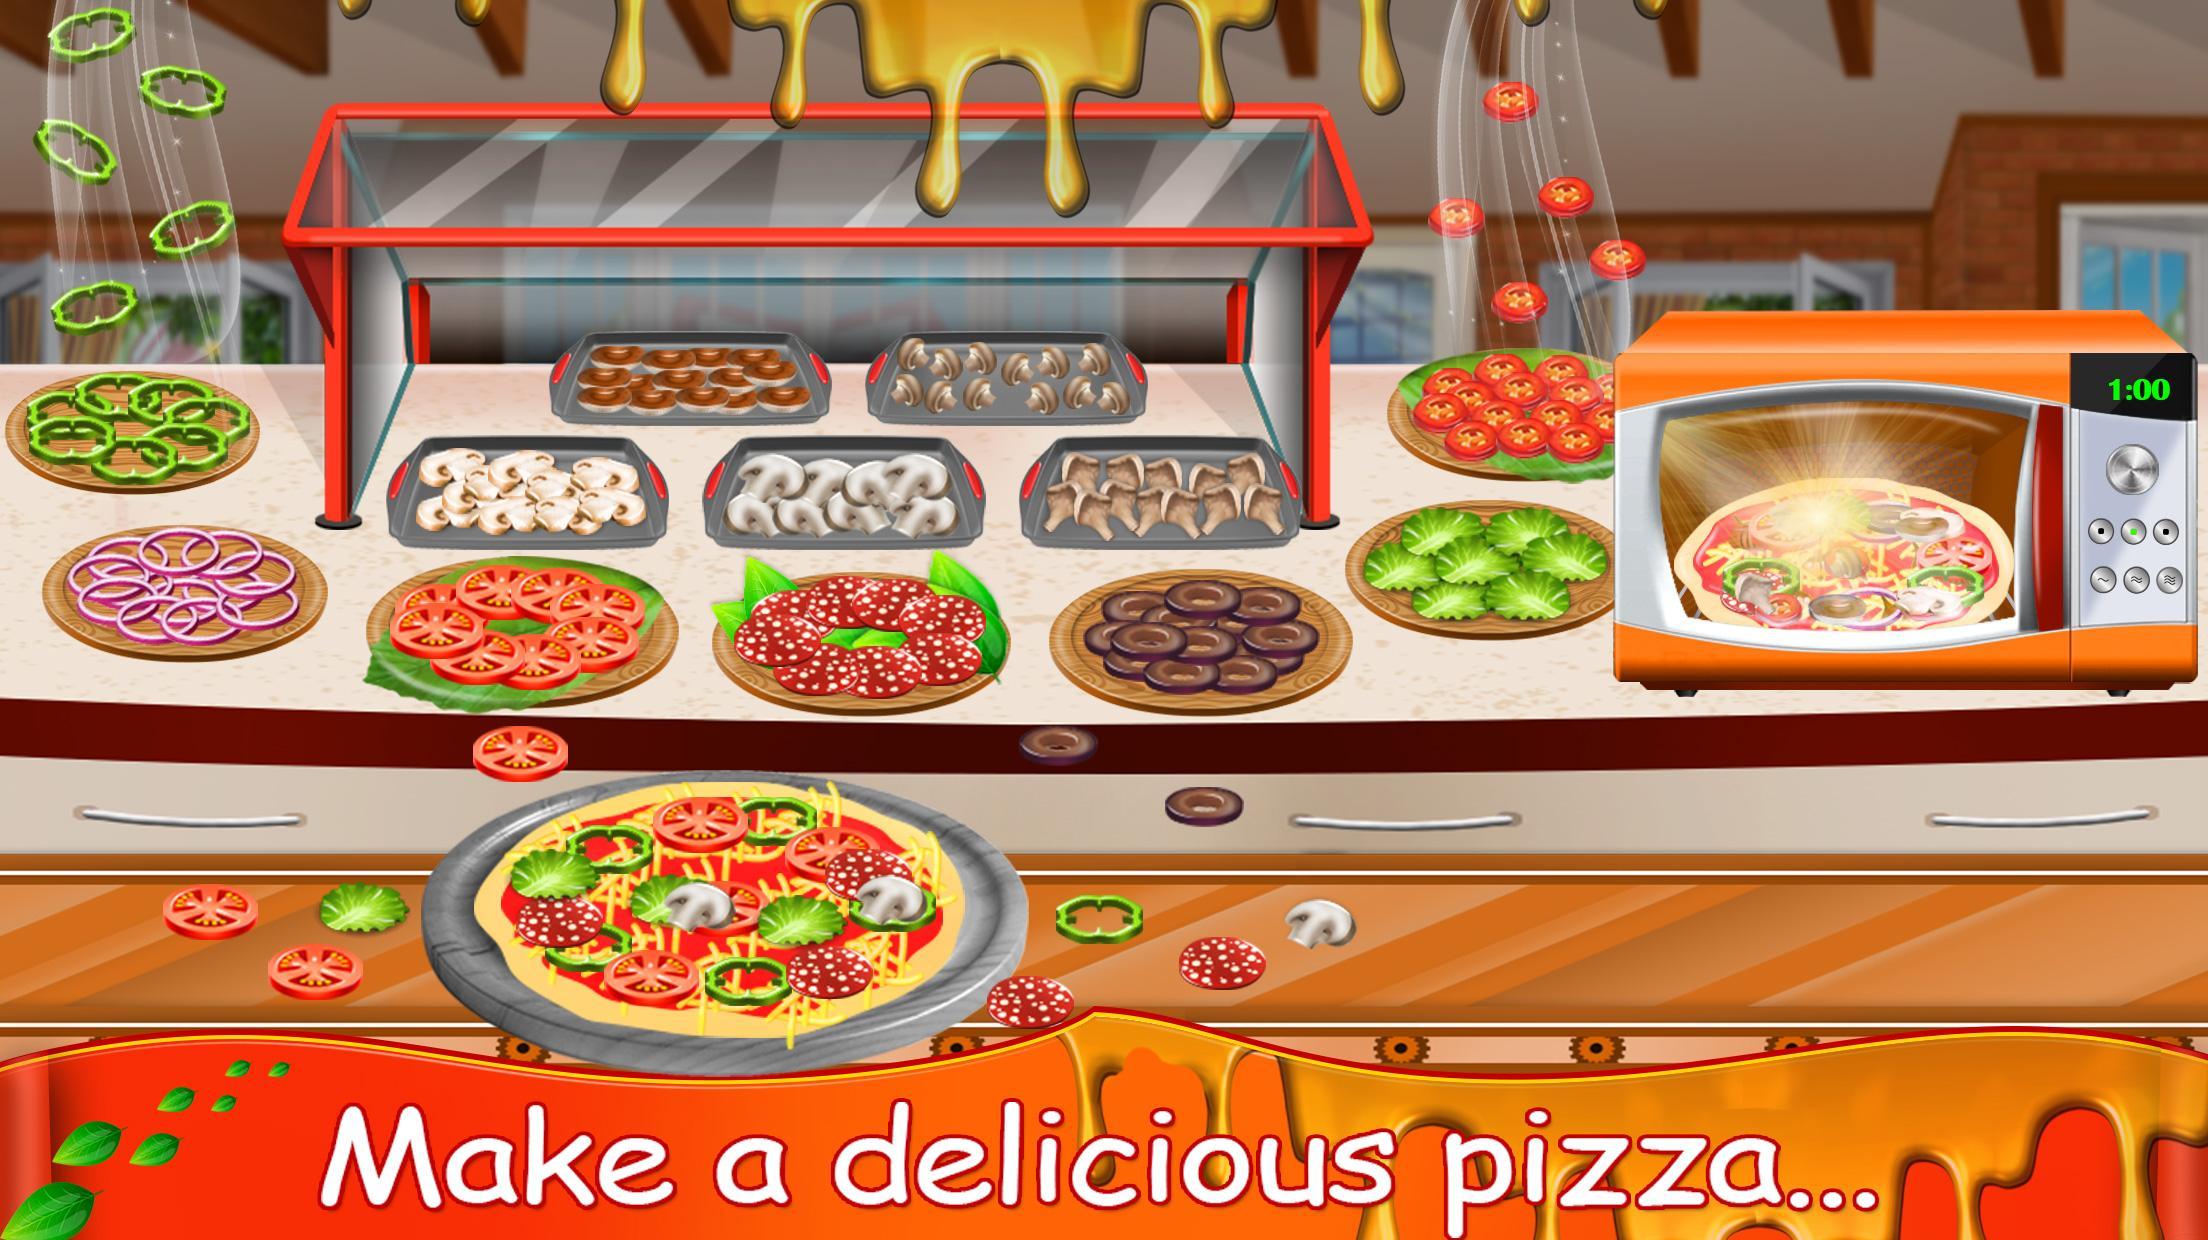 скачать полную версию бесплатно игры веселая ферма печь пиццу фото 68